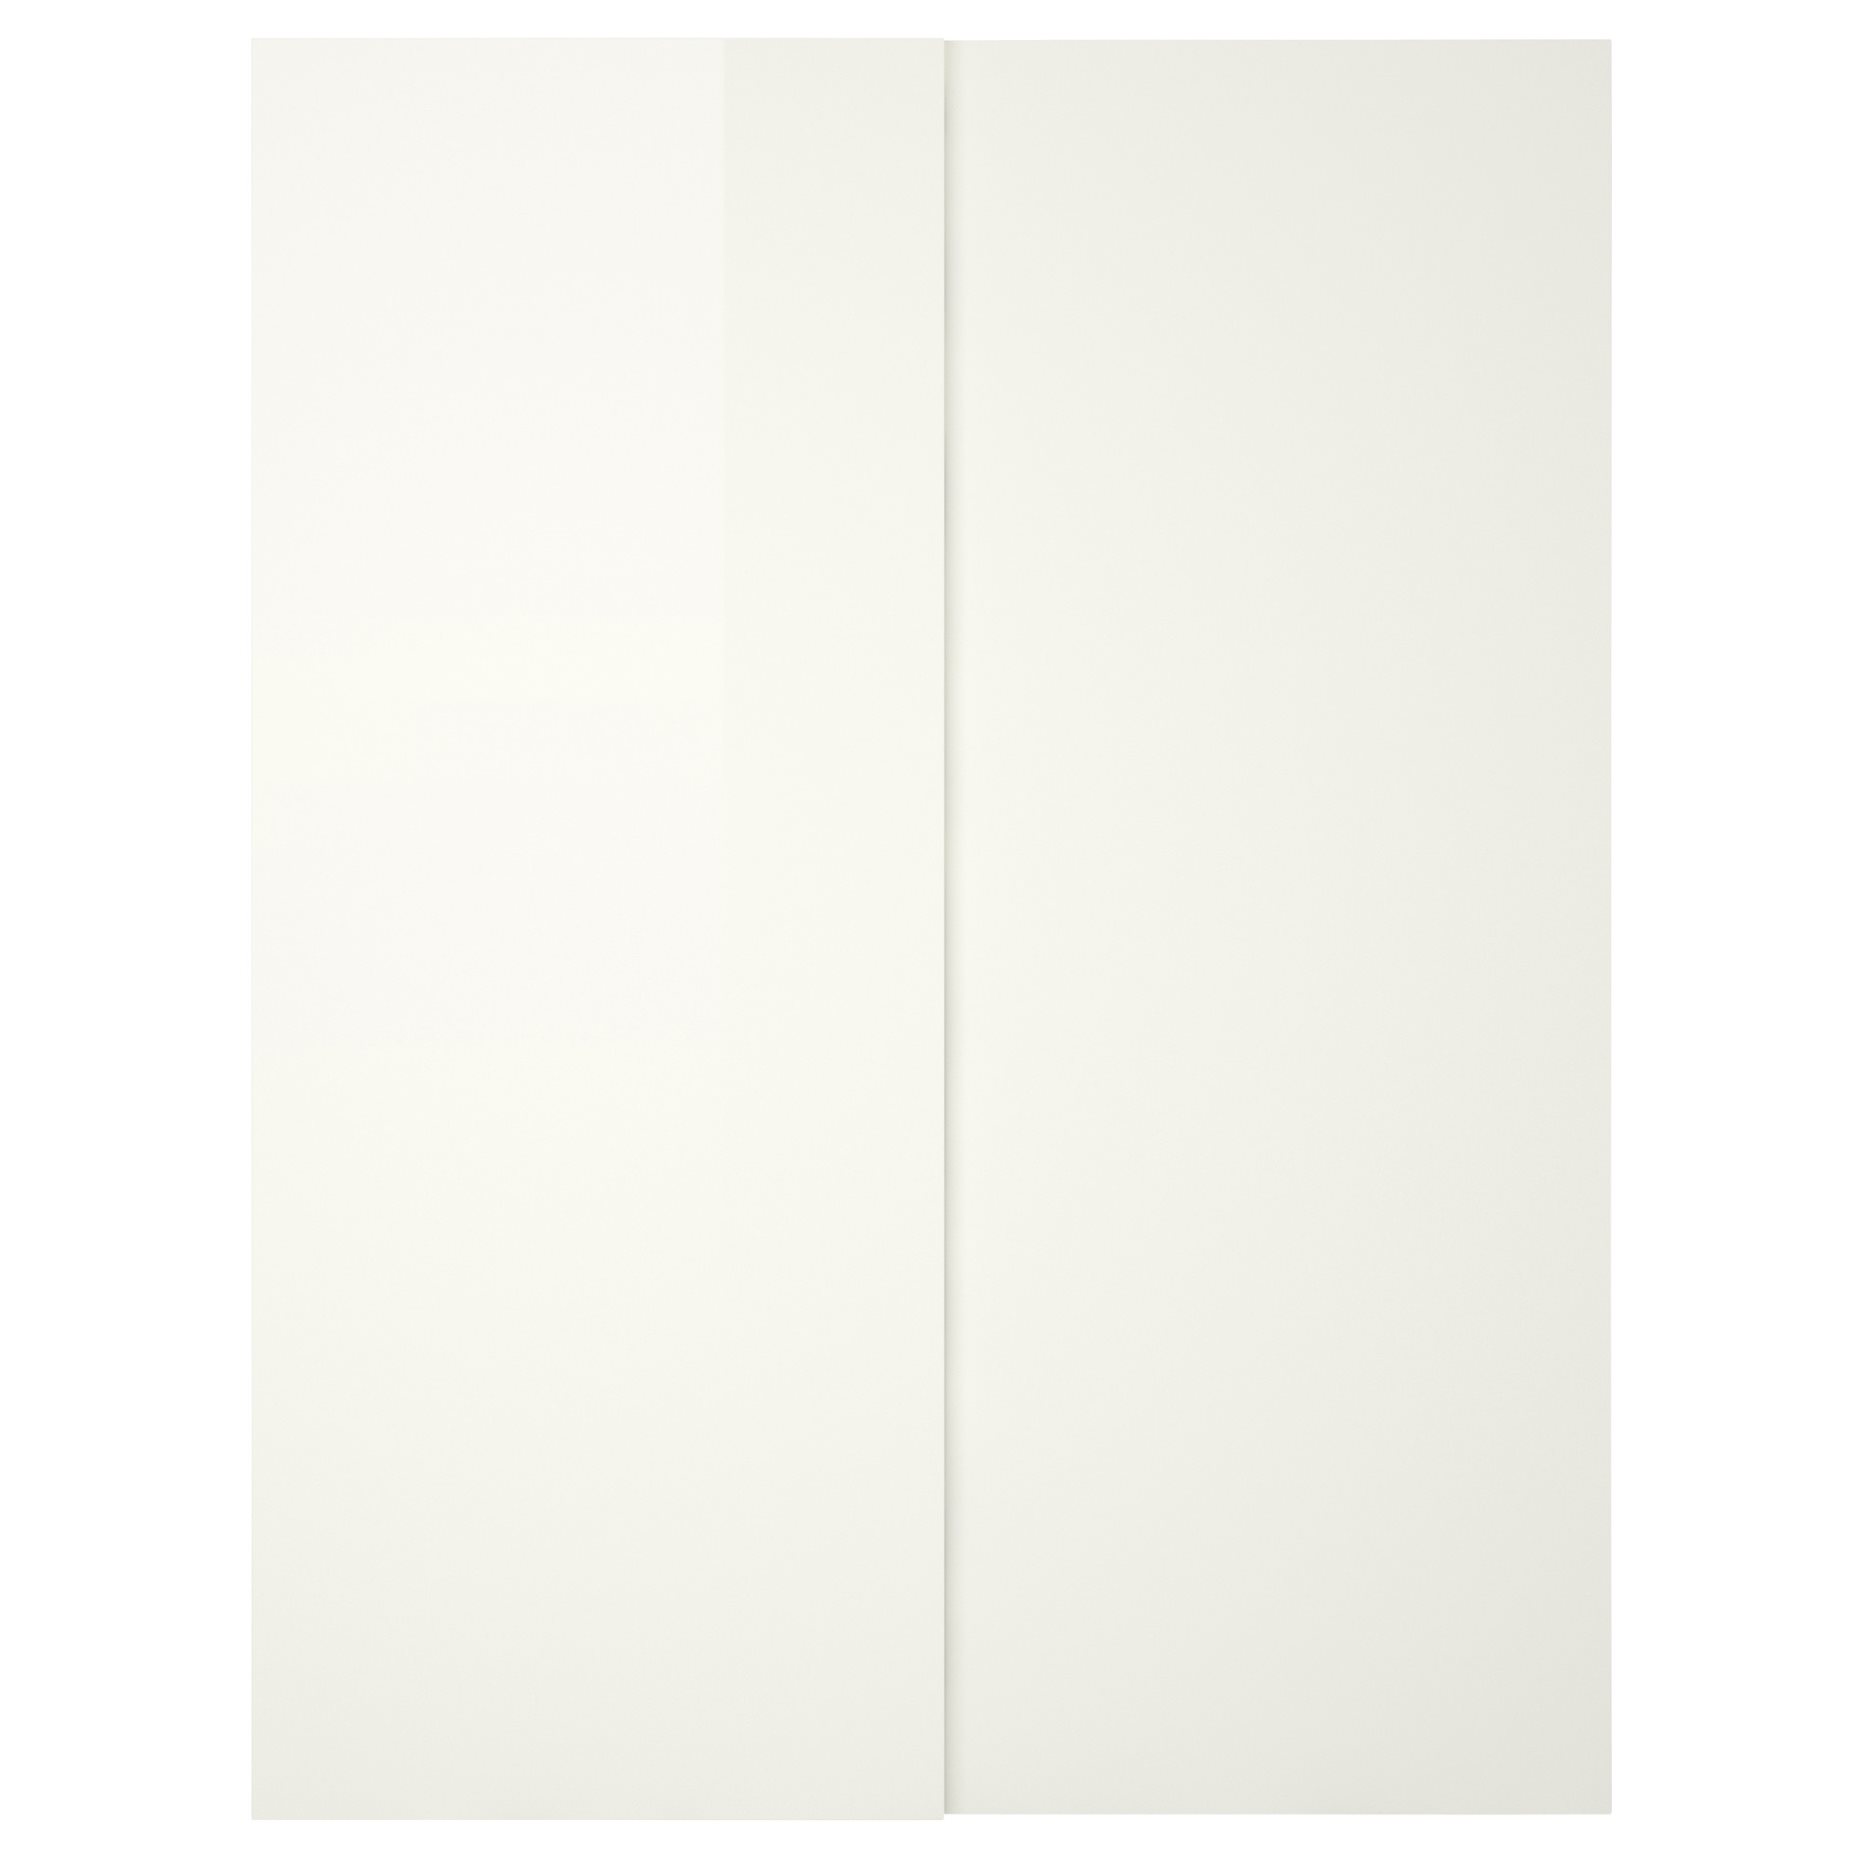 HASVIK, συρόμενη πόρτα/γυαλιστερό, 2 τεμ. 150x236 cm, 203.914.08